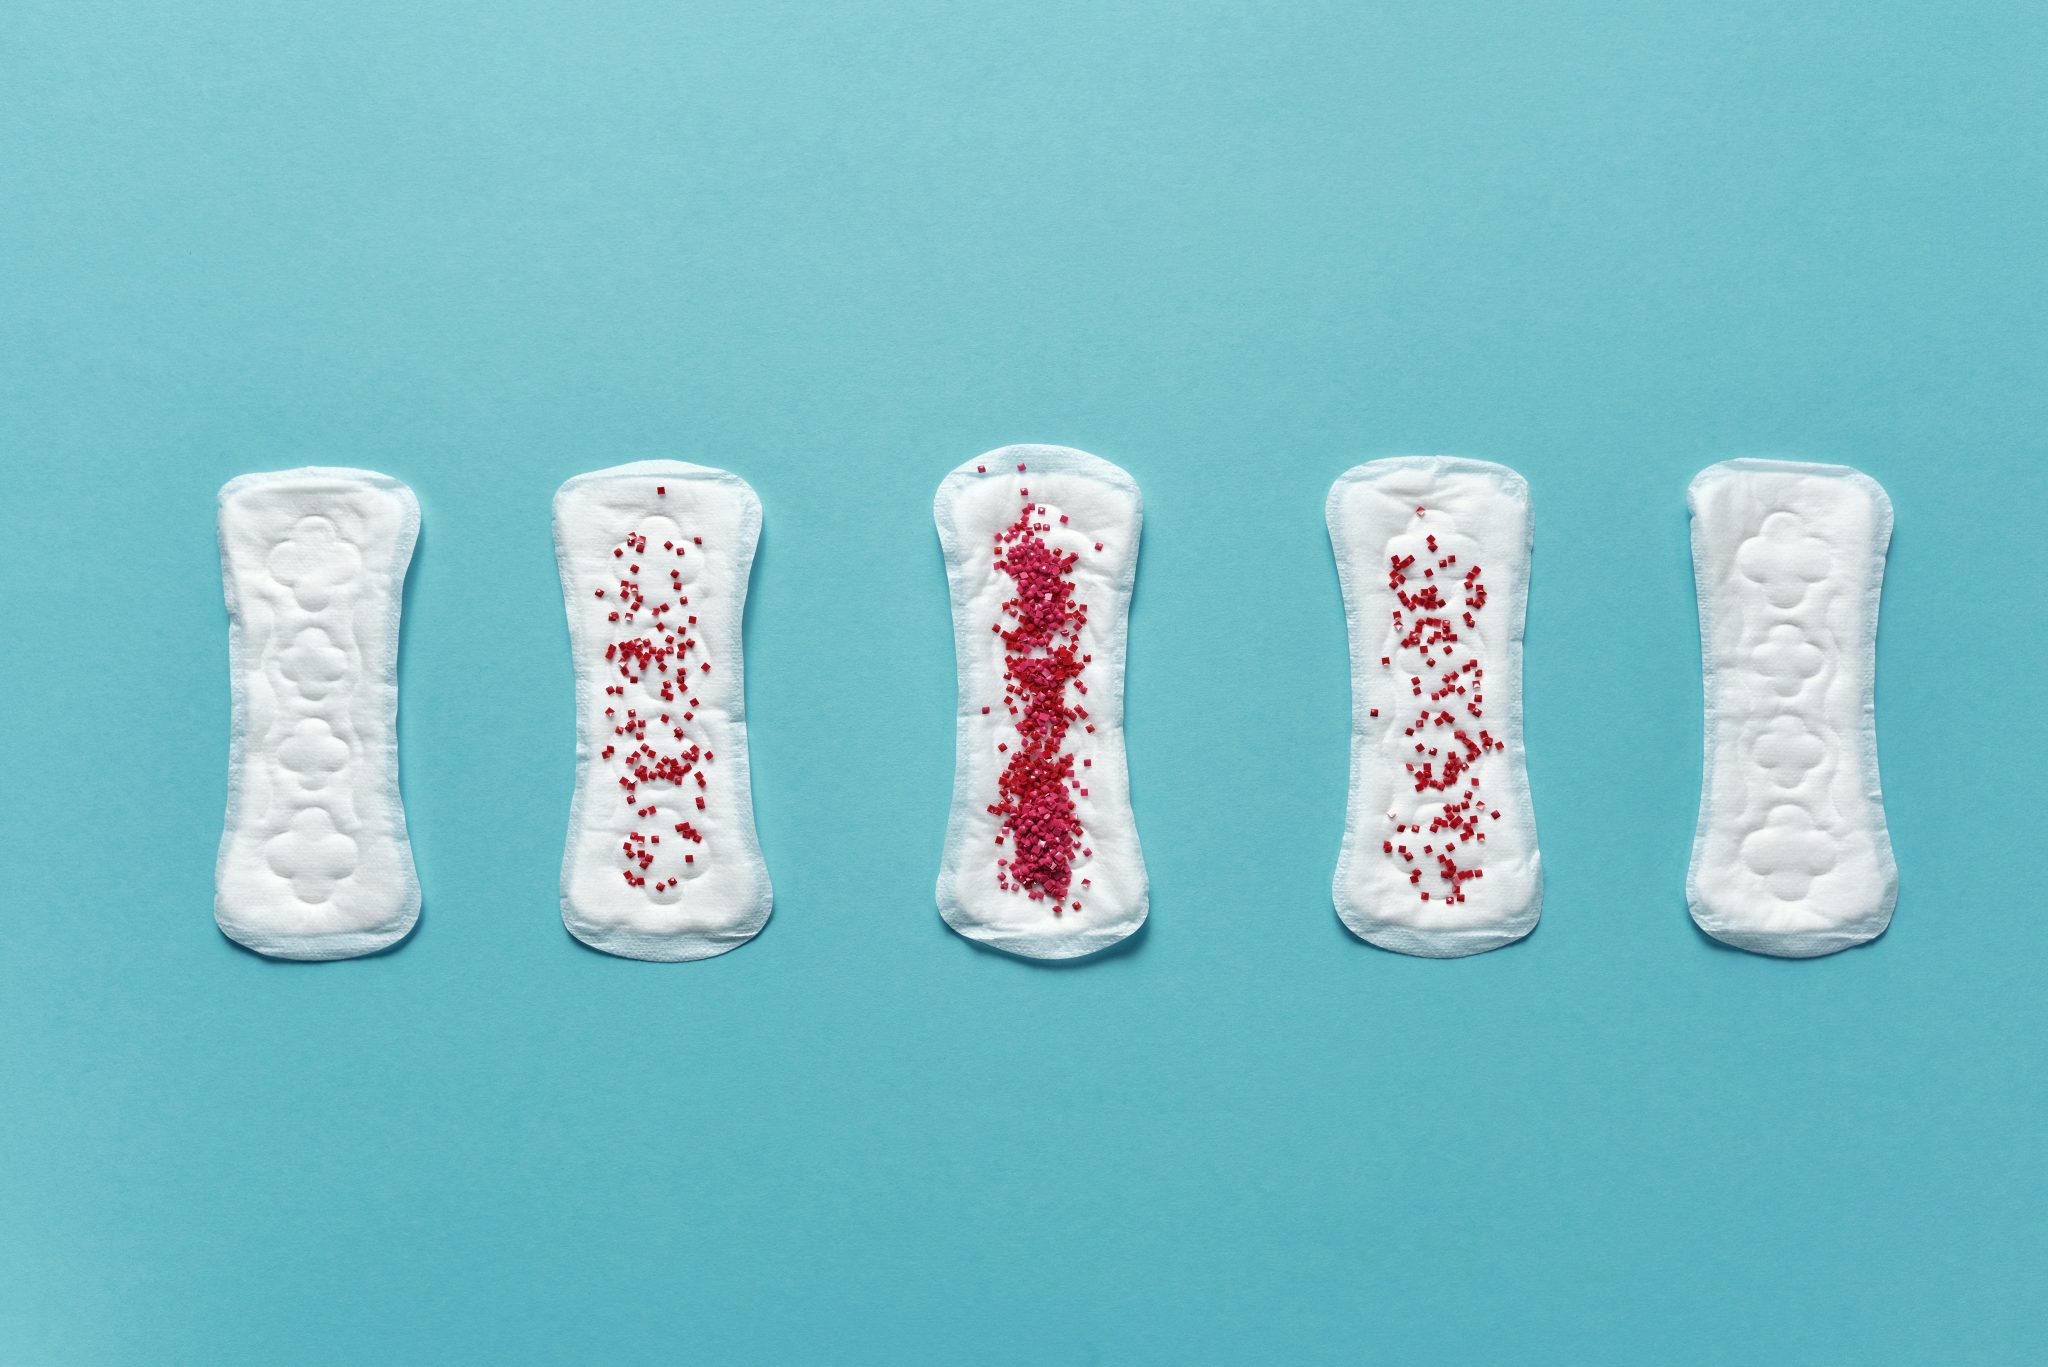 Cinco compresa sanitaria, que grauduan la cantidad de sangre. Simluando fases de la menstruacion